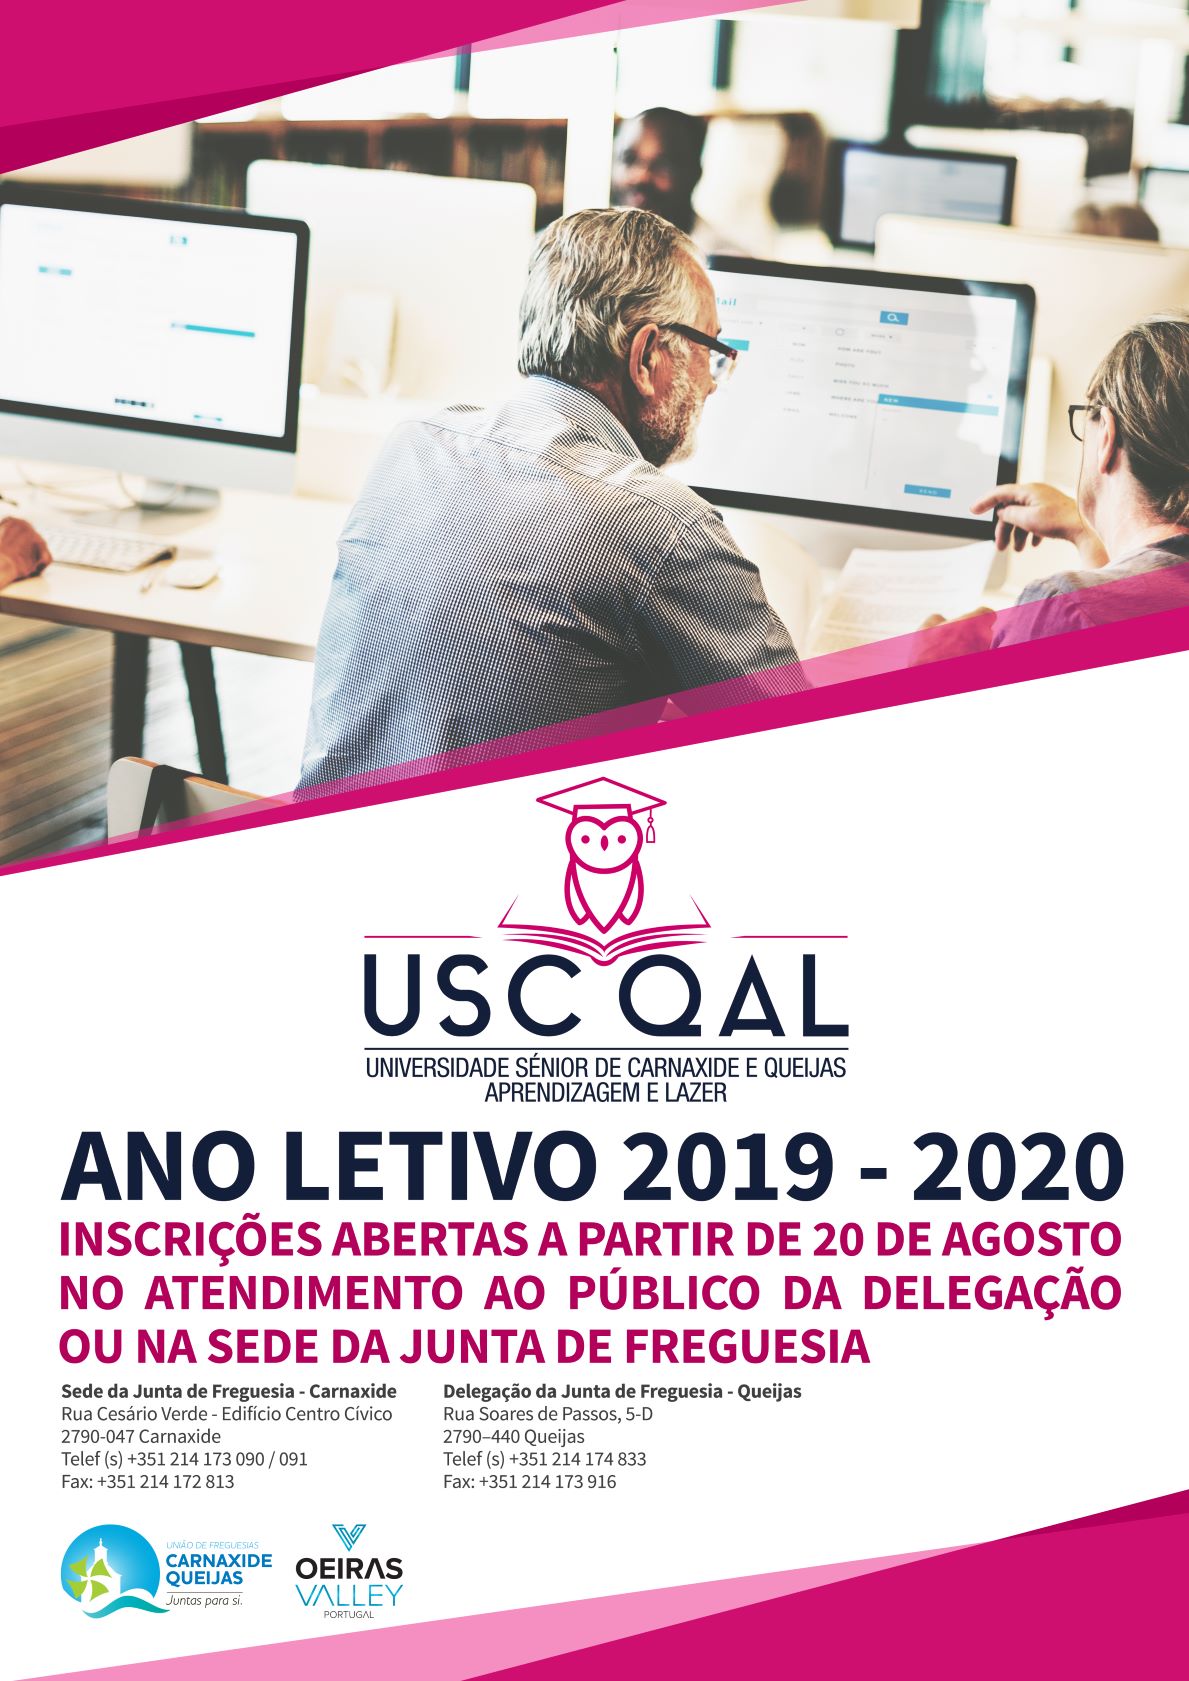 USCQAL - Abertura das Inscrições para o ano letivo 2019/2020